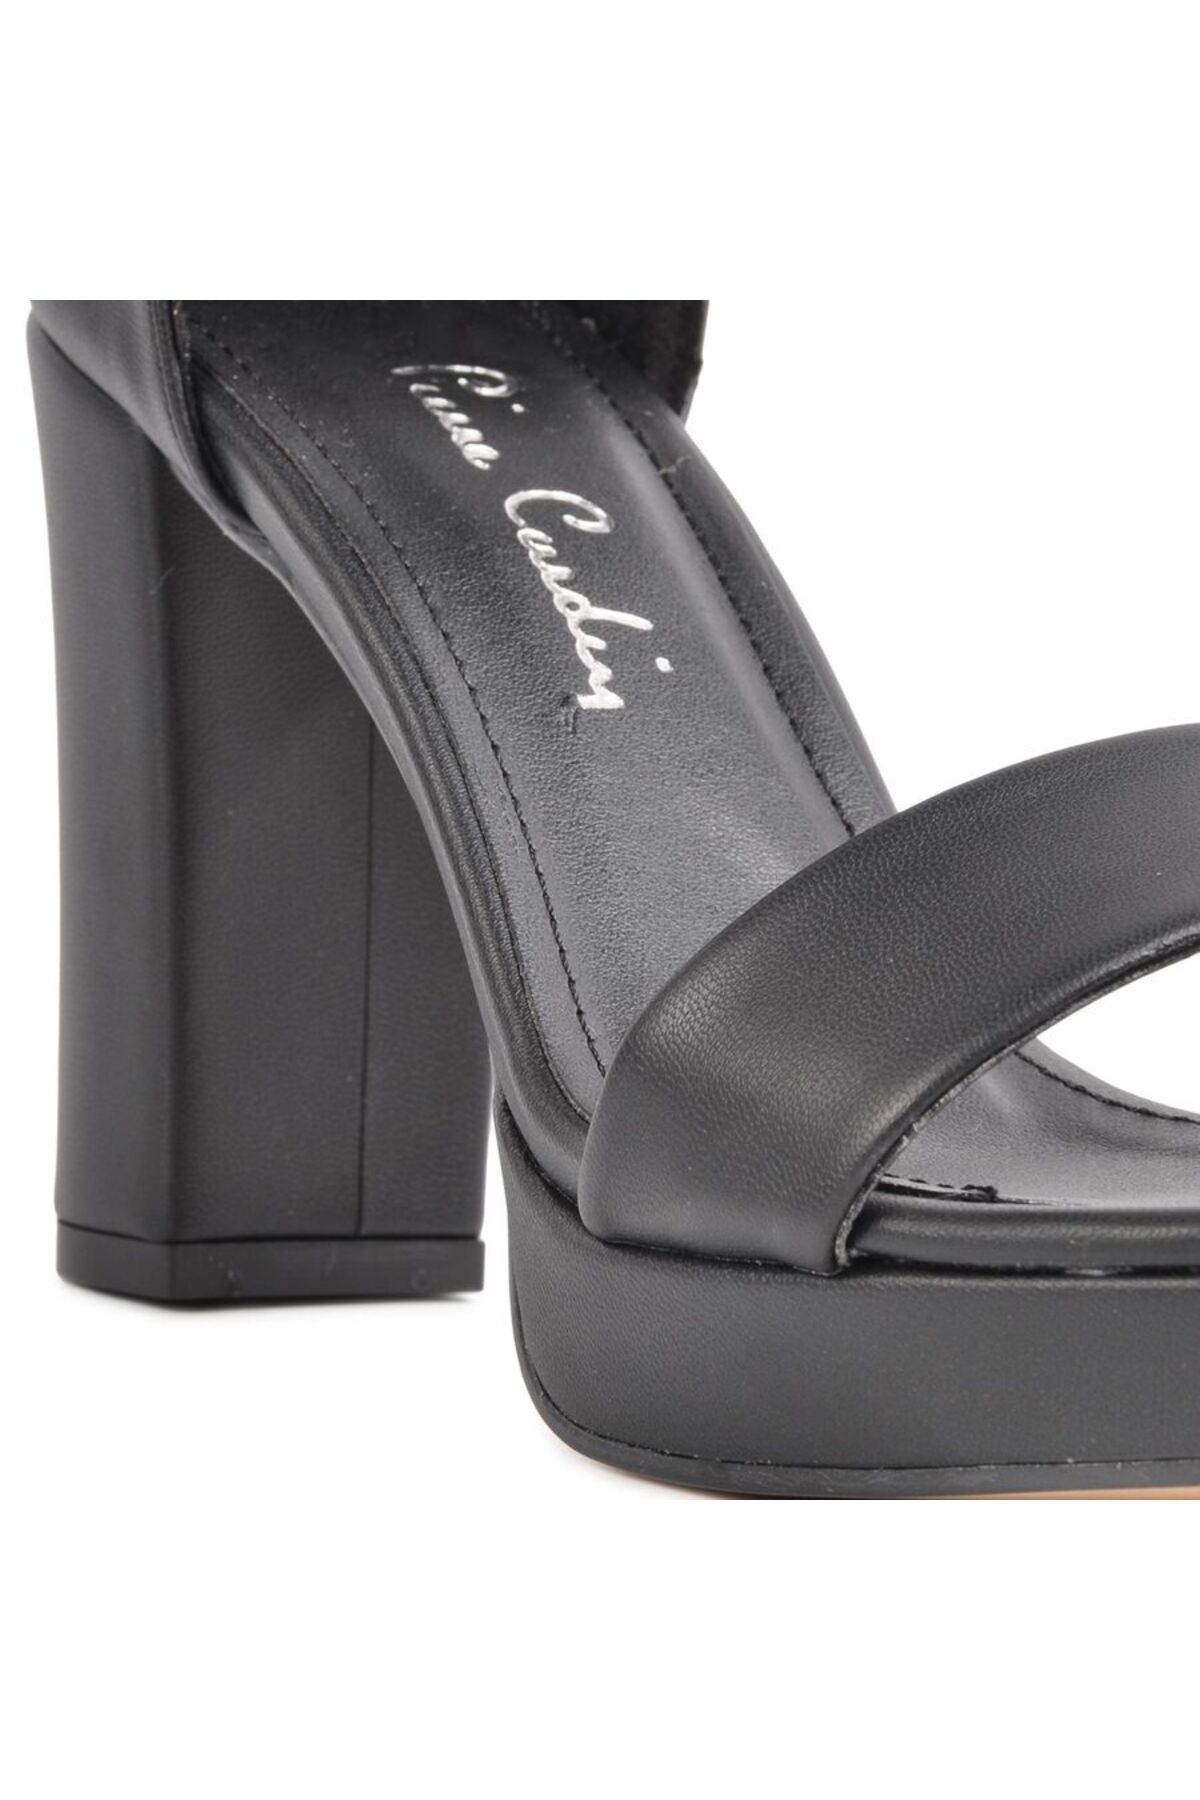 Pierre Cardin Siyah Kadın Sandalet Topuklu Ayakkabı